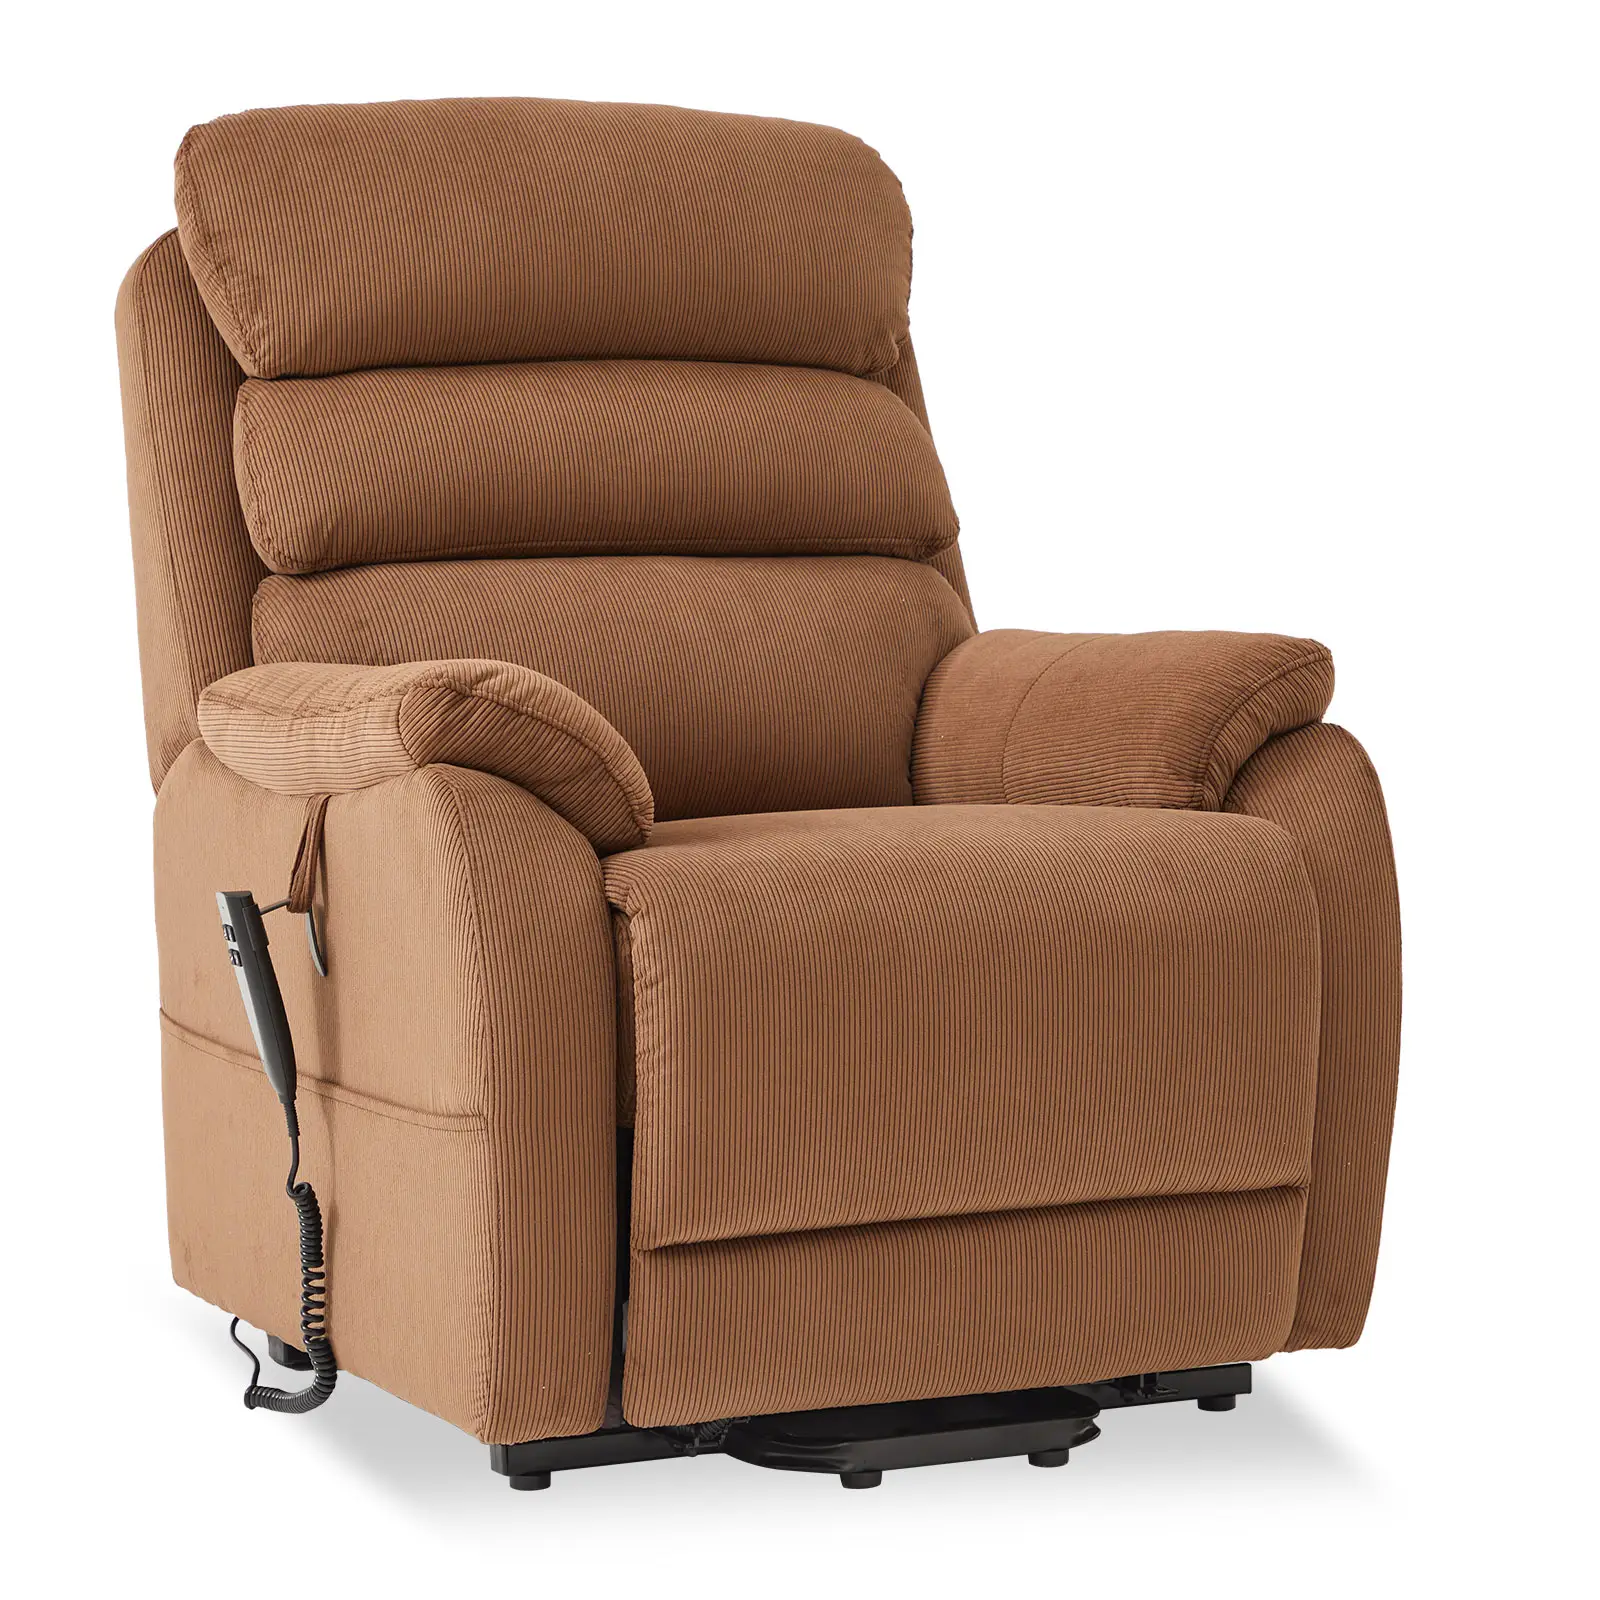 CJSmart kursi angkat rumah, kursi malas untuk orang pendek, menempatkan Daya datar Sofa dengan penyesuaian posisi tak terbatas dan saku samping